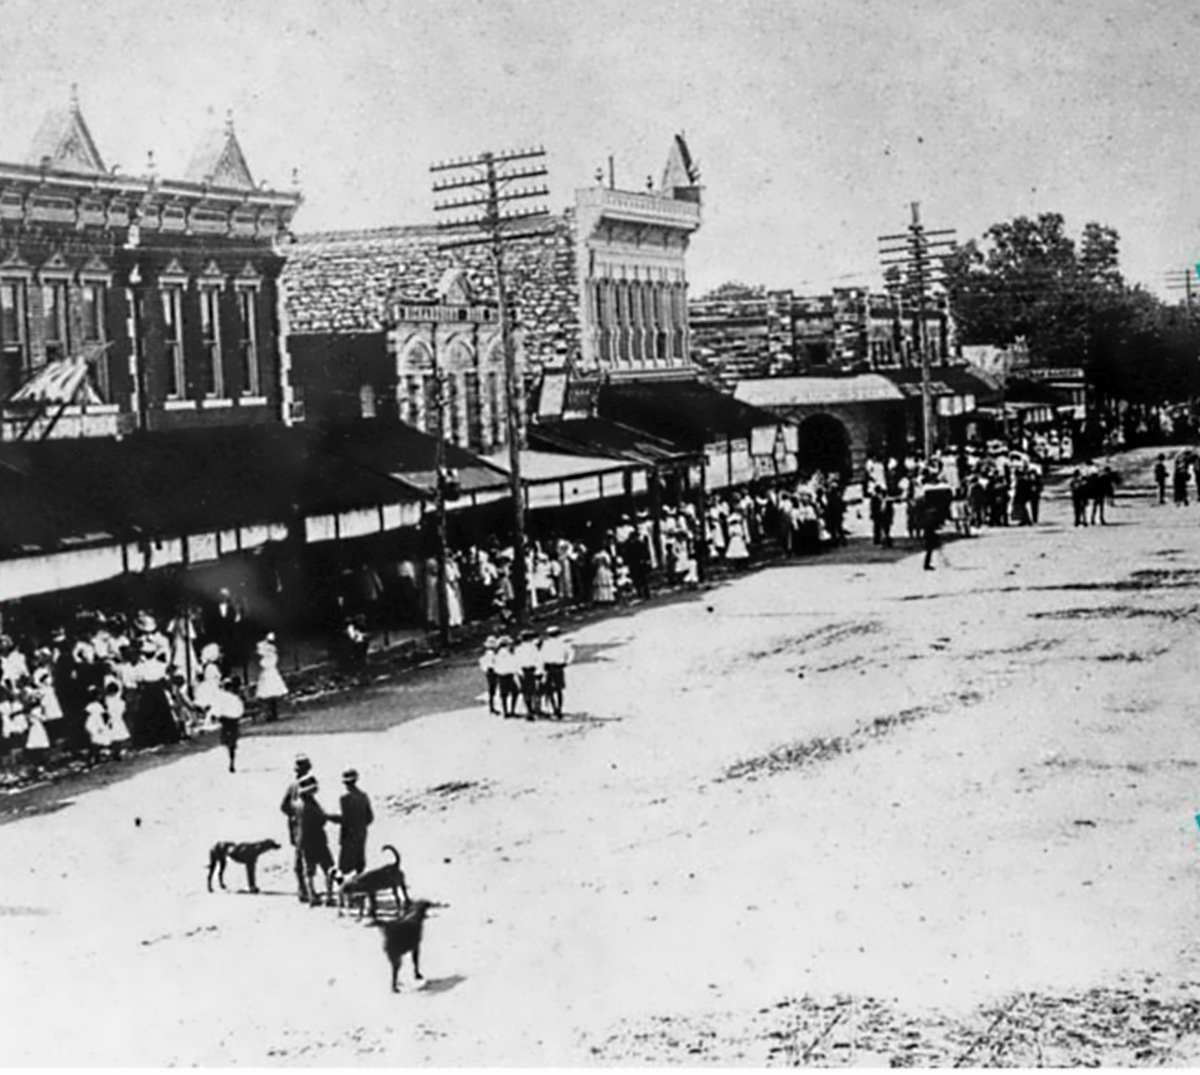 Georgetown Texas Main Street in 1900